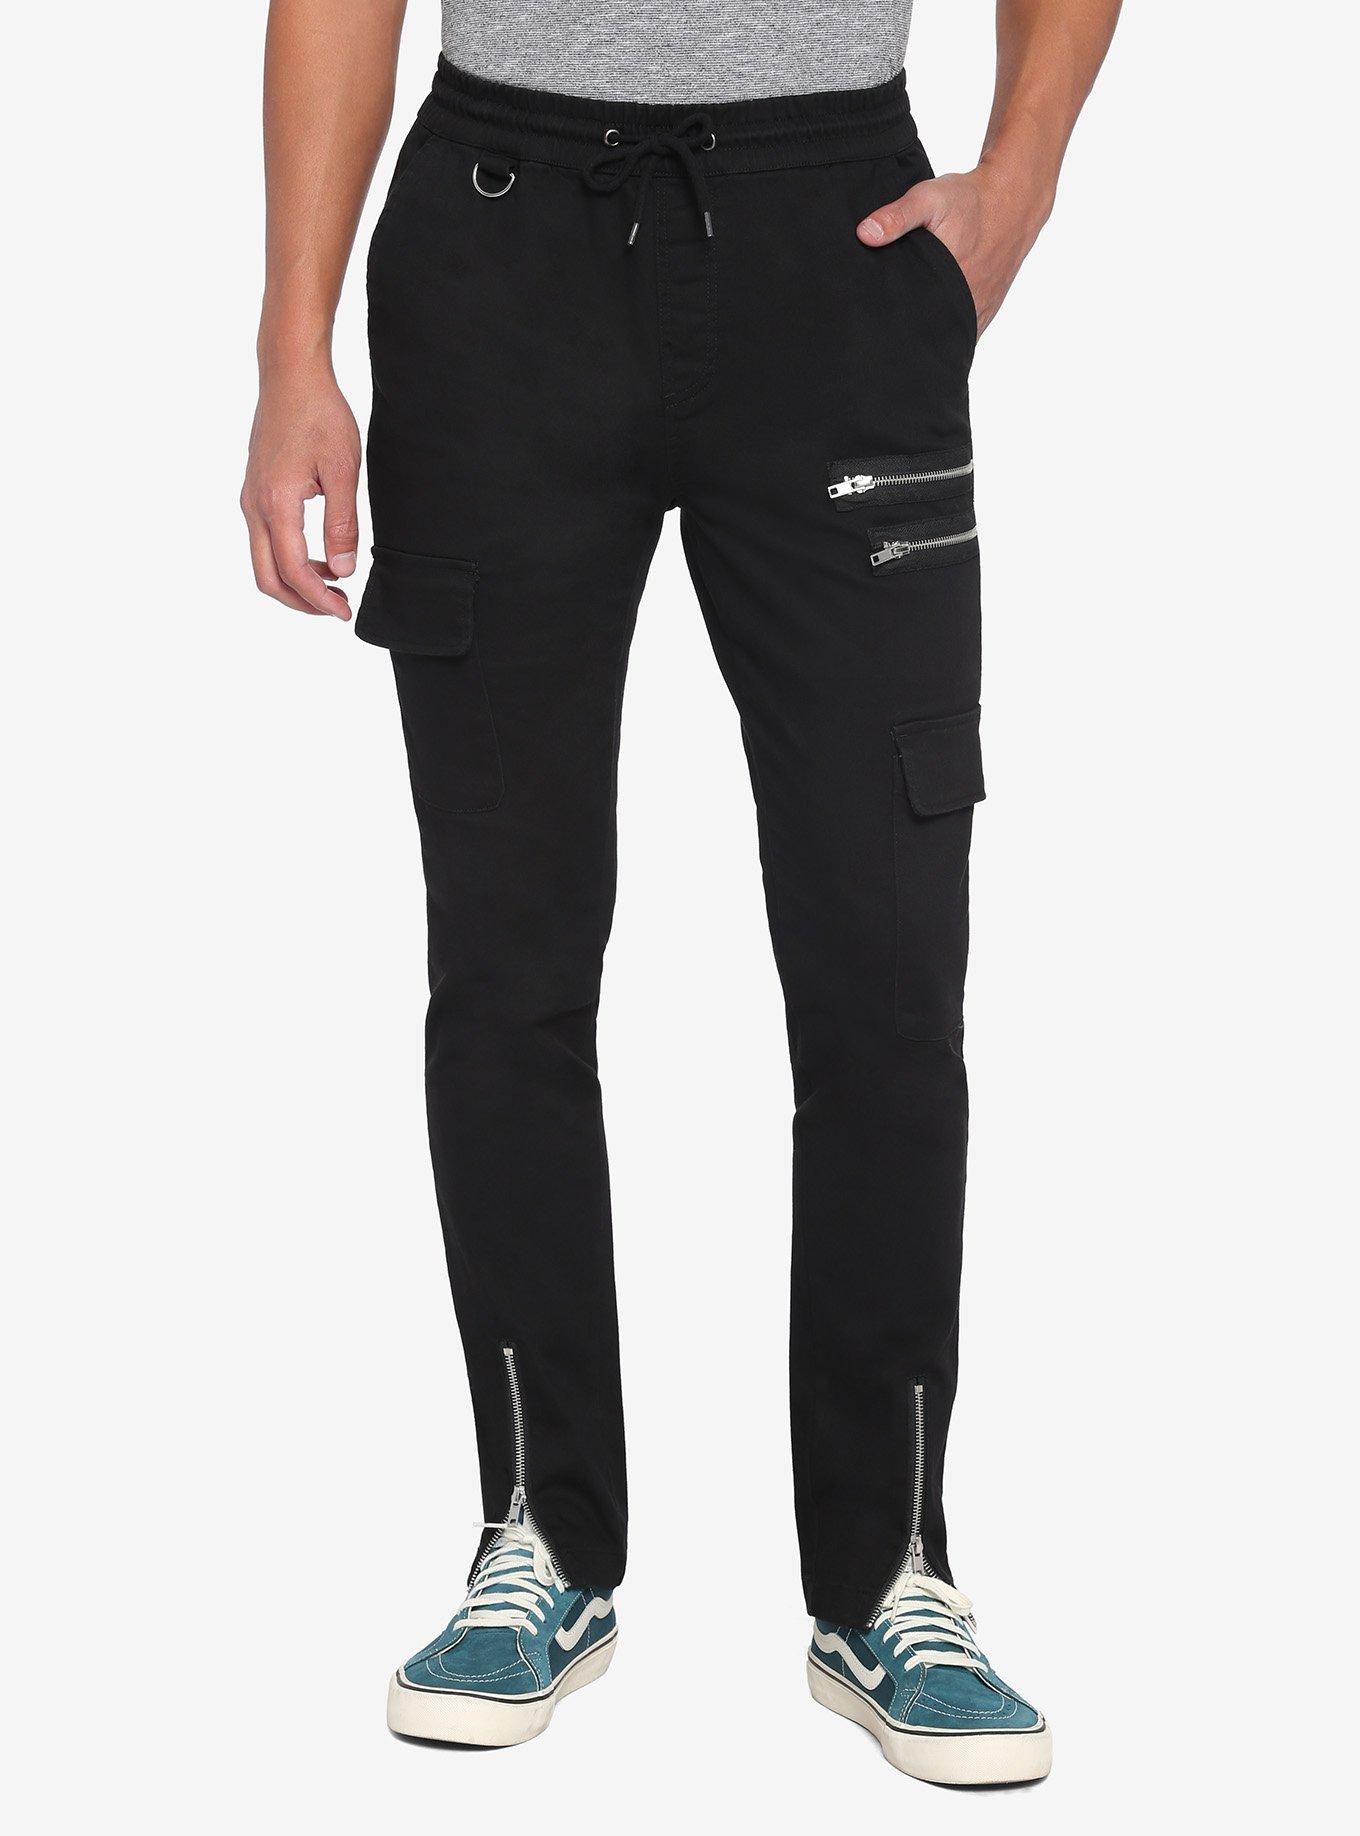 Black Zipper Jogger Pants, BLACK, hi-res